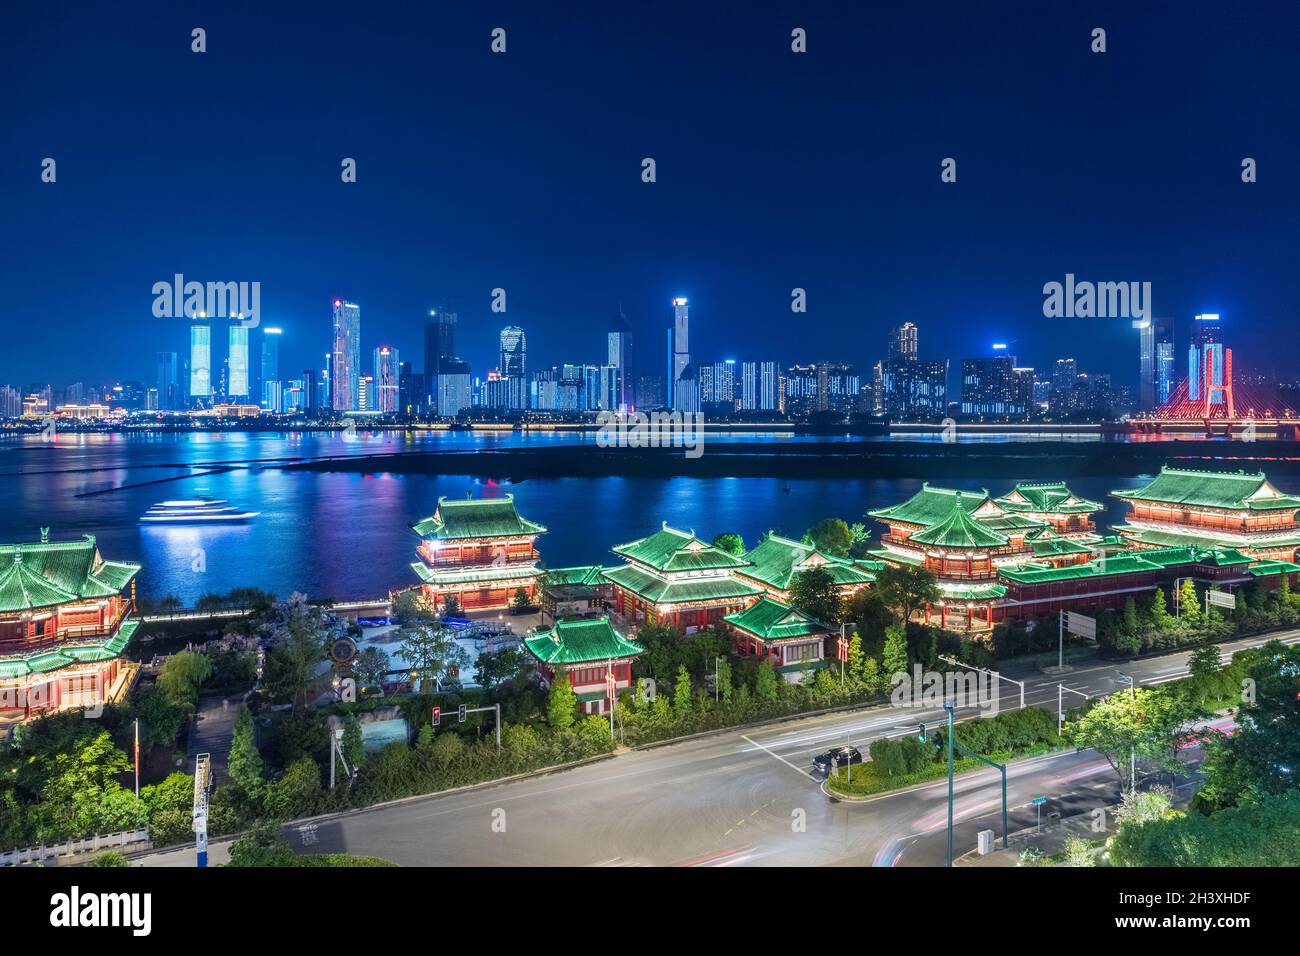 Nanchang cityscape at night Stock Photo